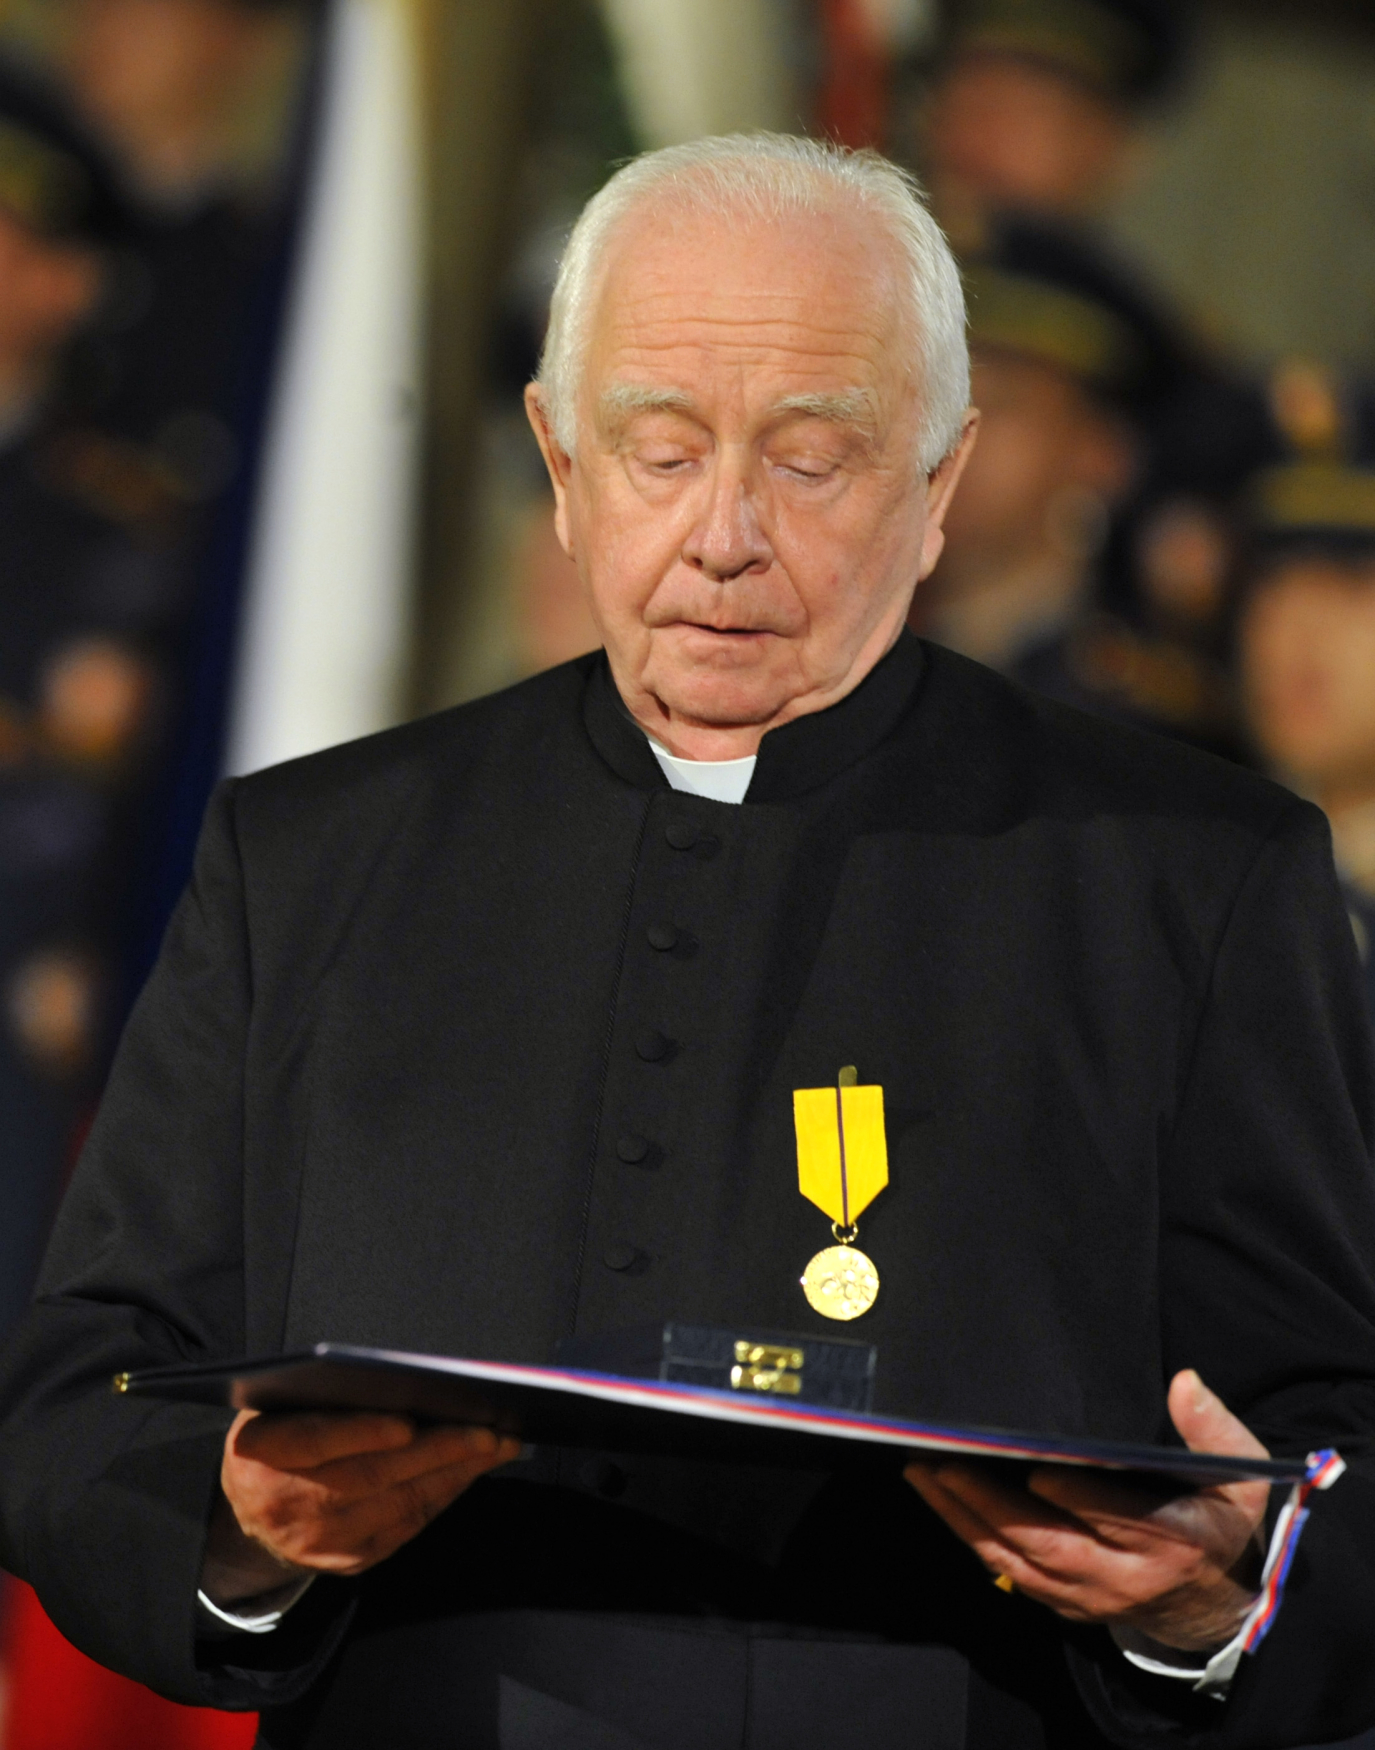 Kněz Petr Piťha získal v roce 2011 z rukou Václava Klause medaili Za zásluhy.